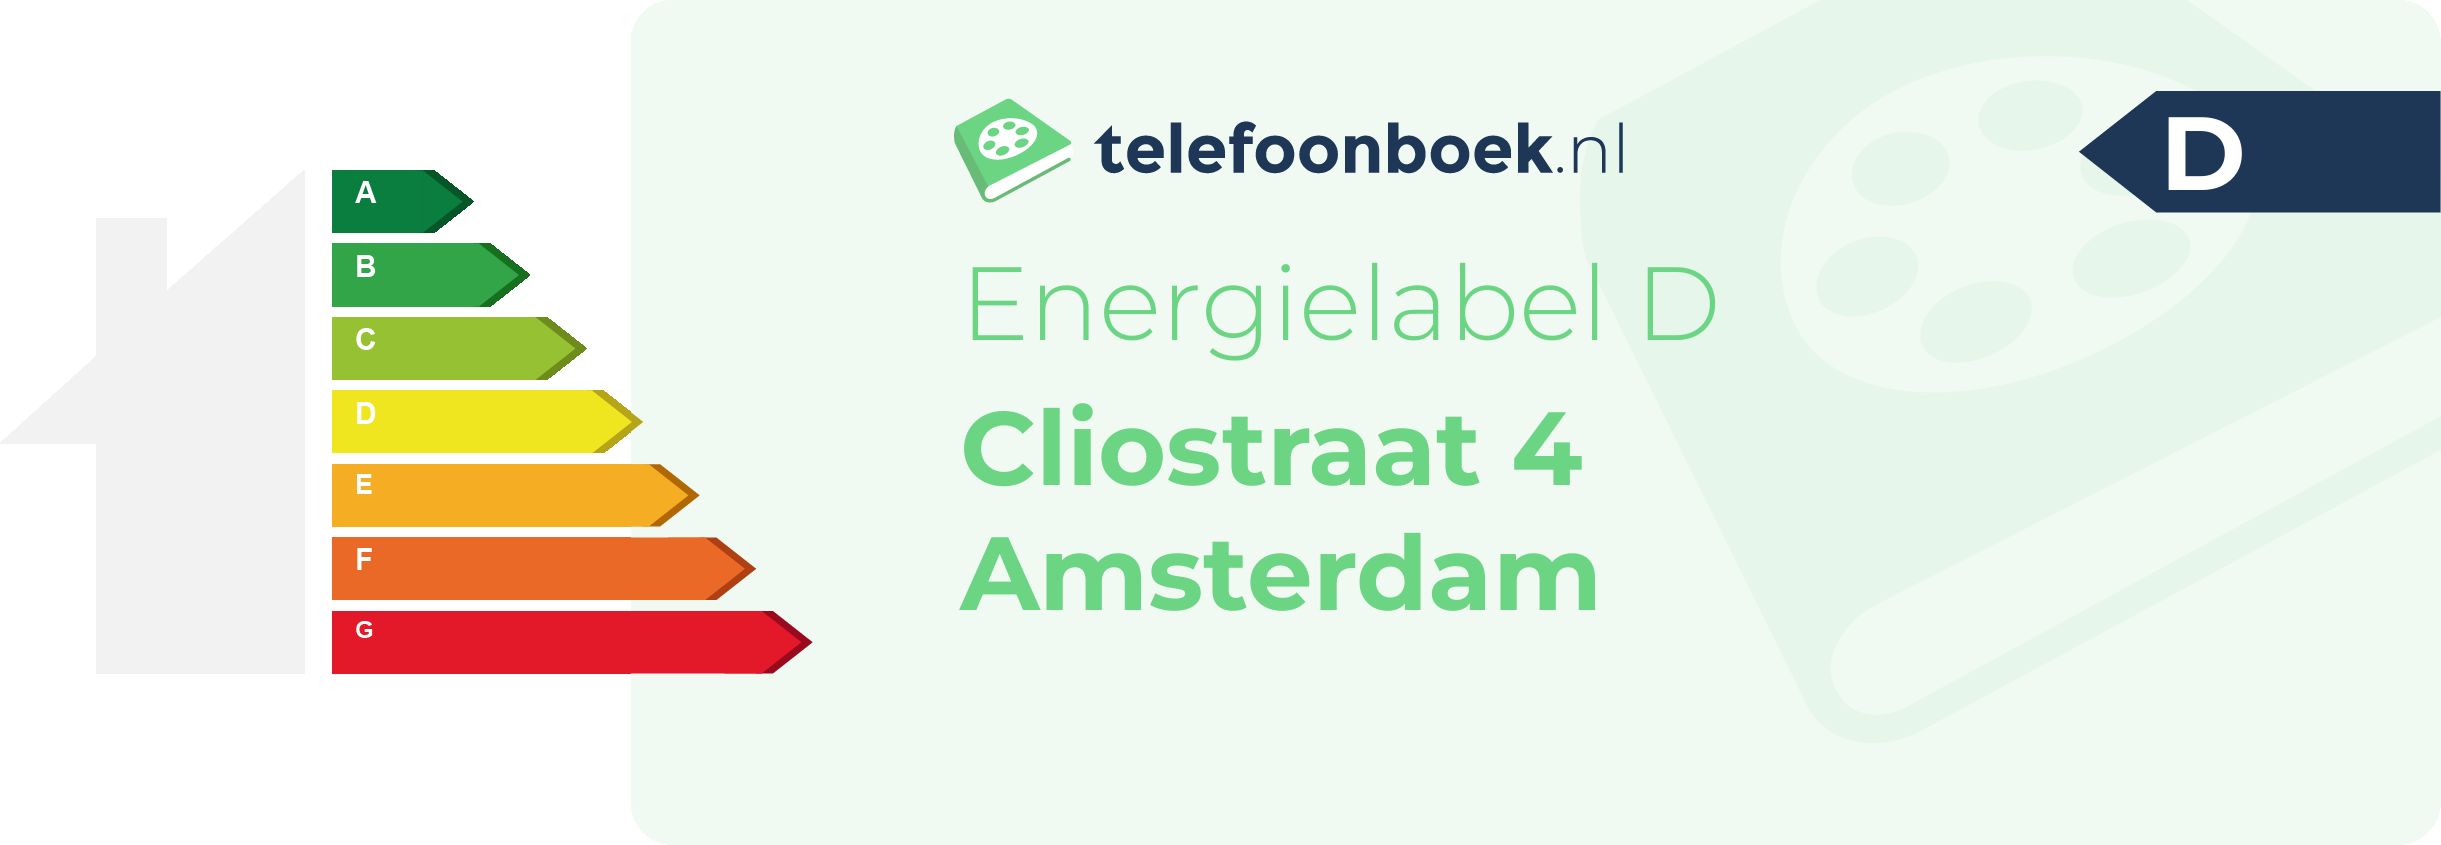 Energielabel Cliostraat 4 Amsterdam